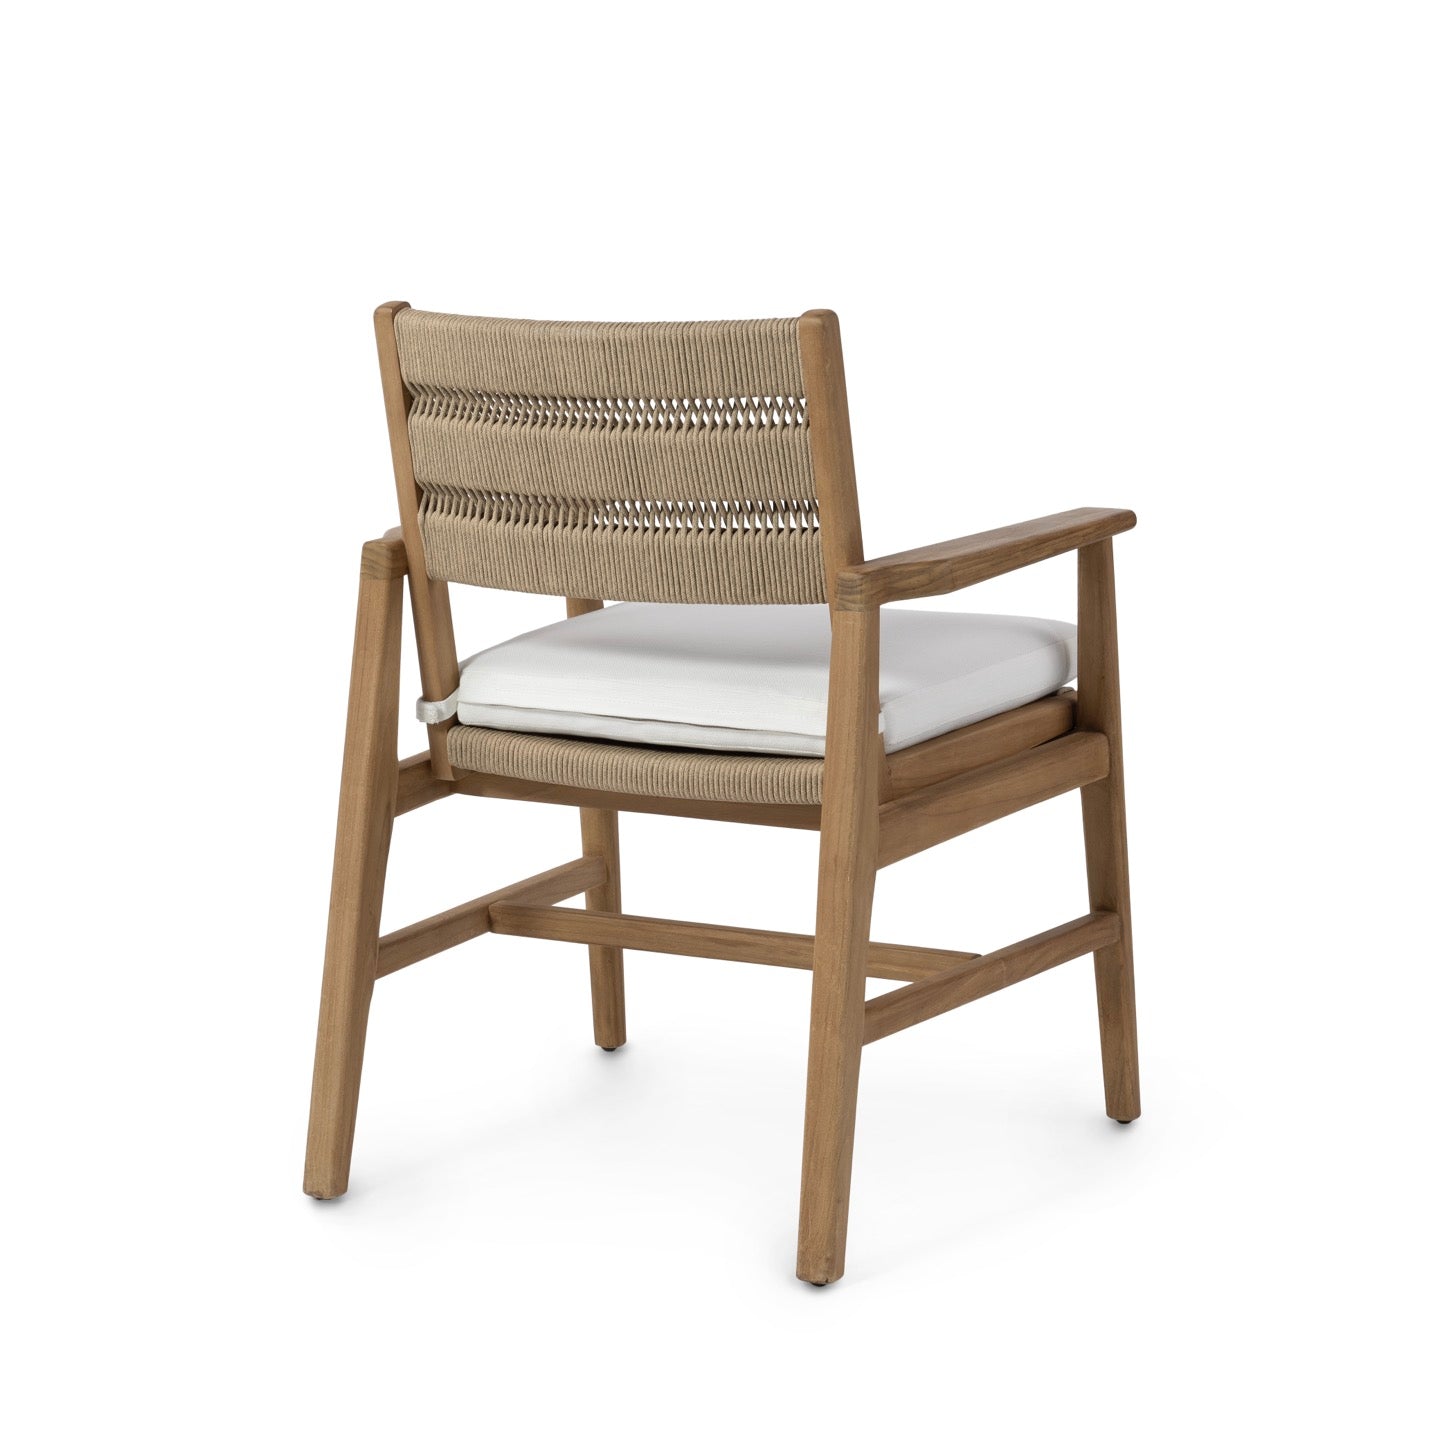 Covington Outdoor Arm Chair